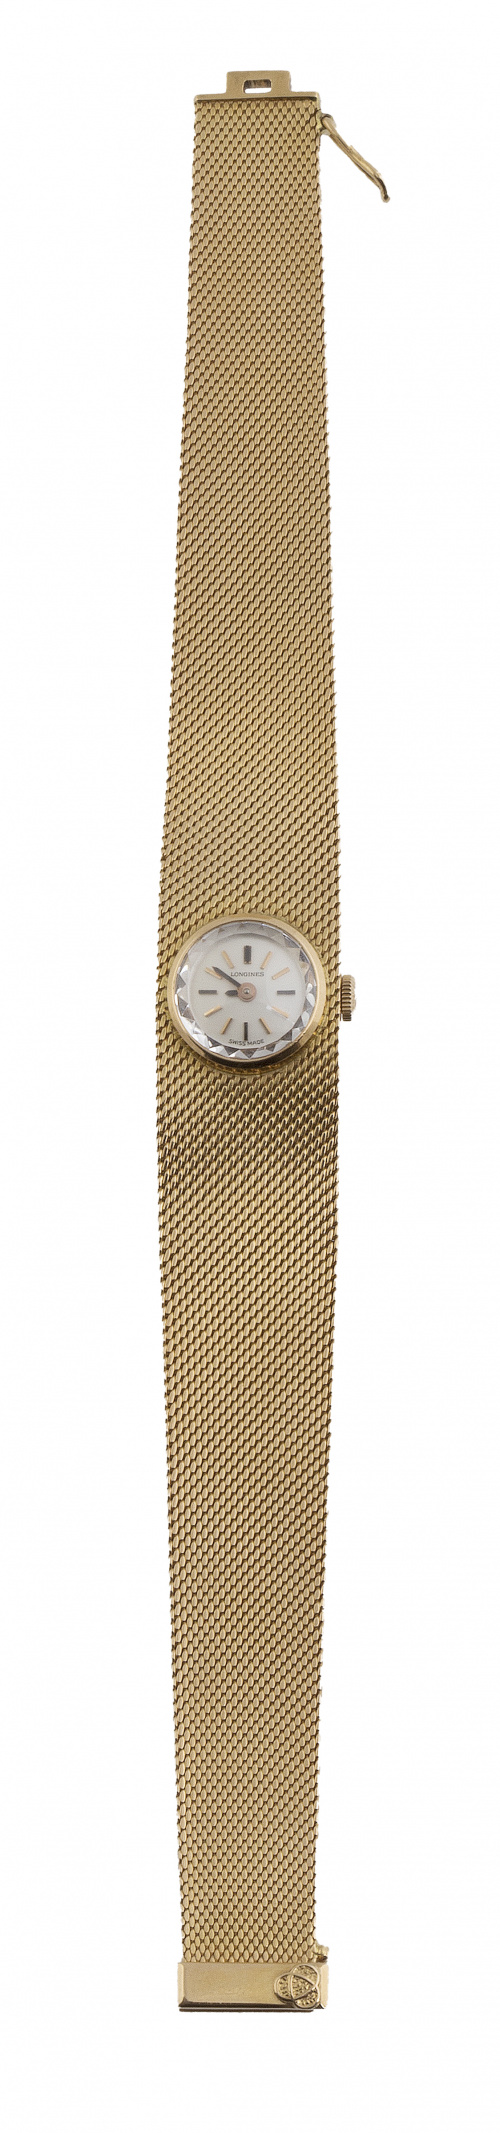 Reloj de pulsera LONGINES en malla de oro años 60